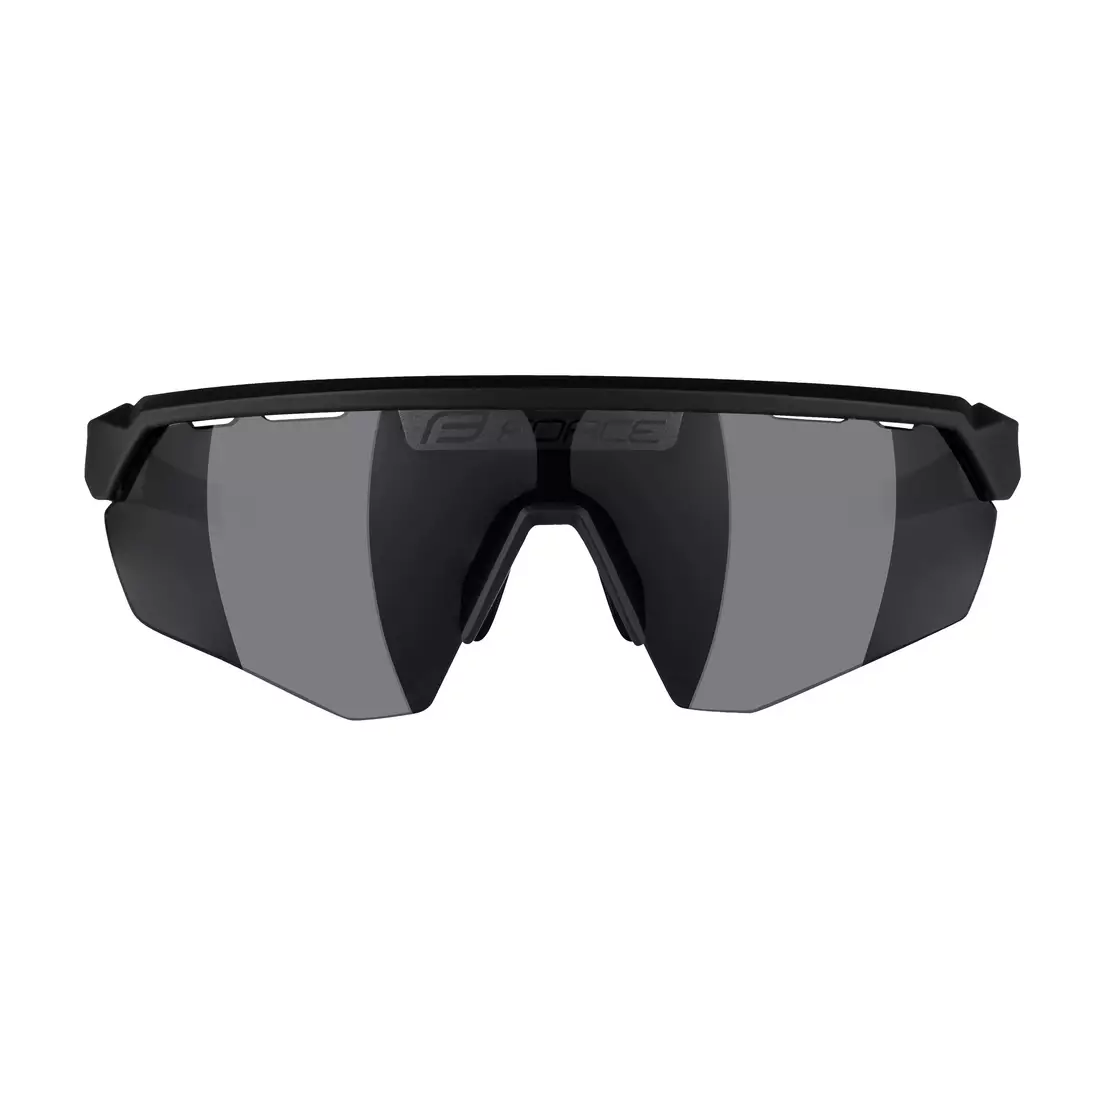 FORCE ochelari de soare ENIGMA, negru și alb mat, lentile negre 91162